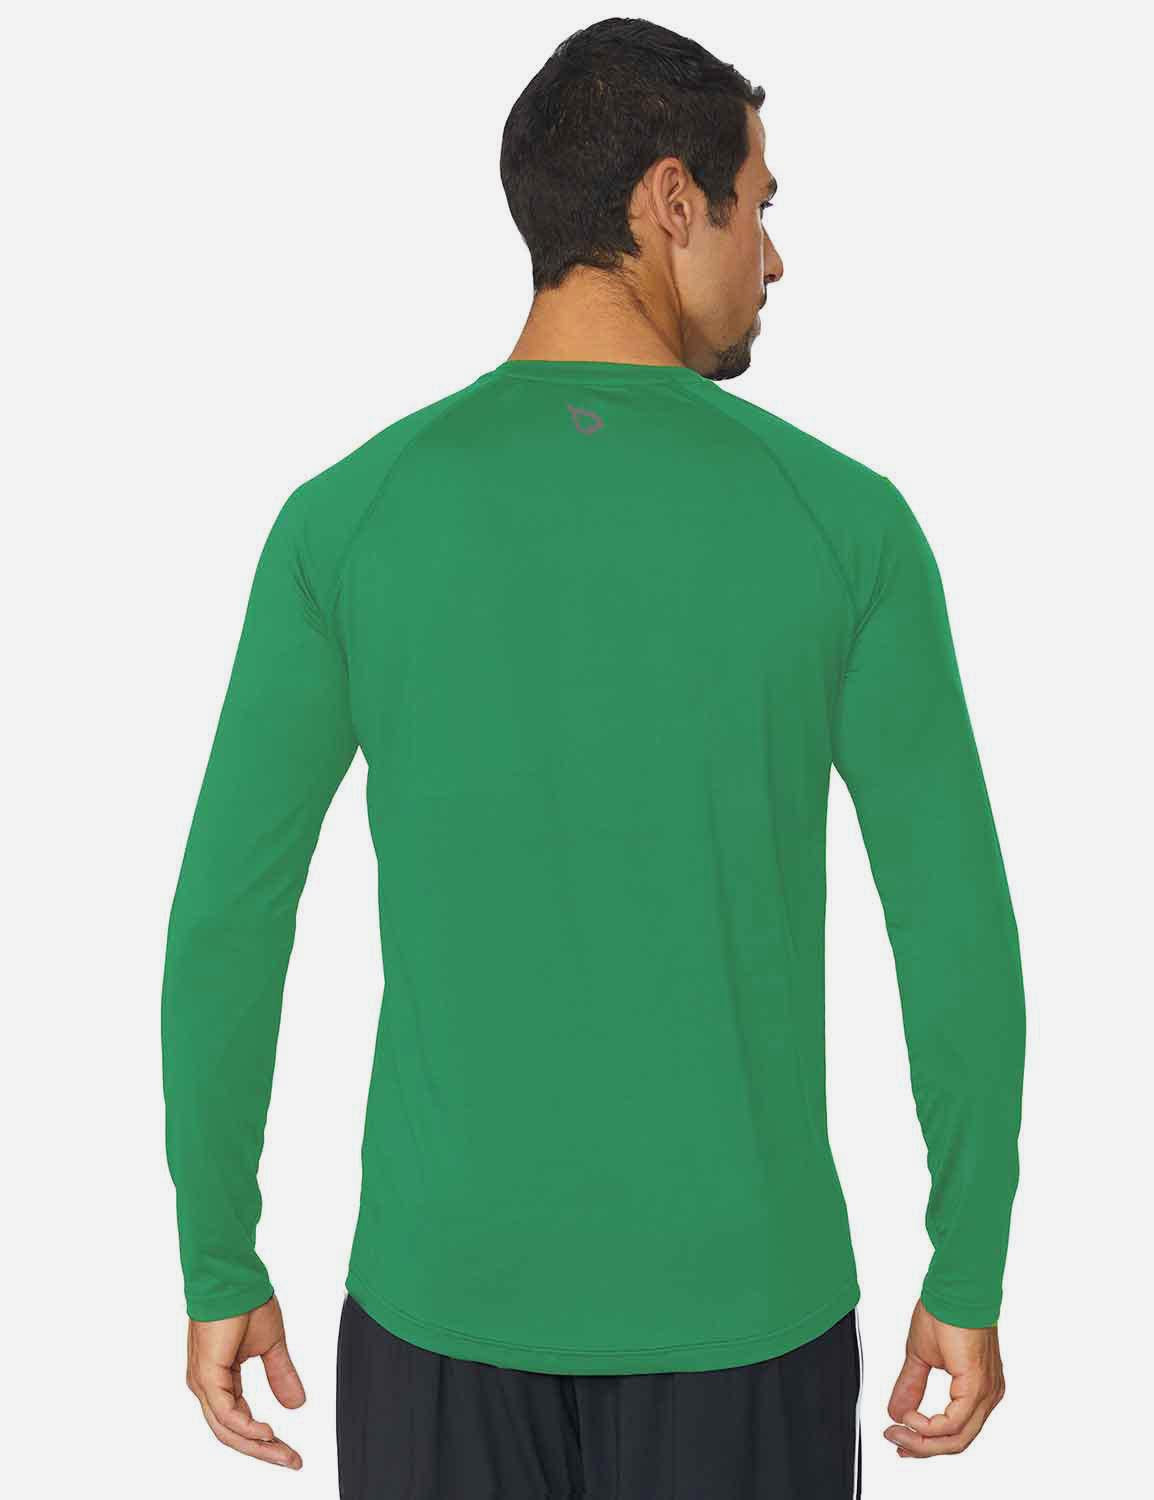 Baleaf Men's Workout Crew-Neck Slim-Cut Long Sleeved Shirt abd195 Forest Green Back